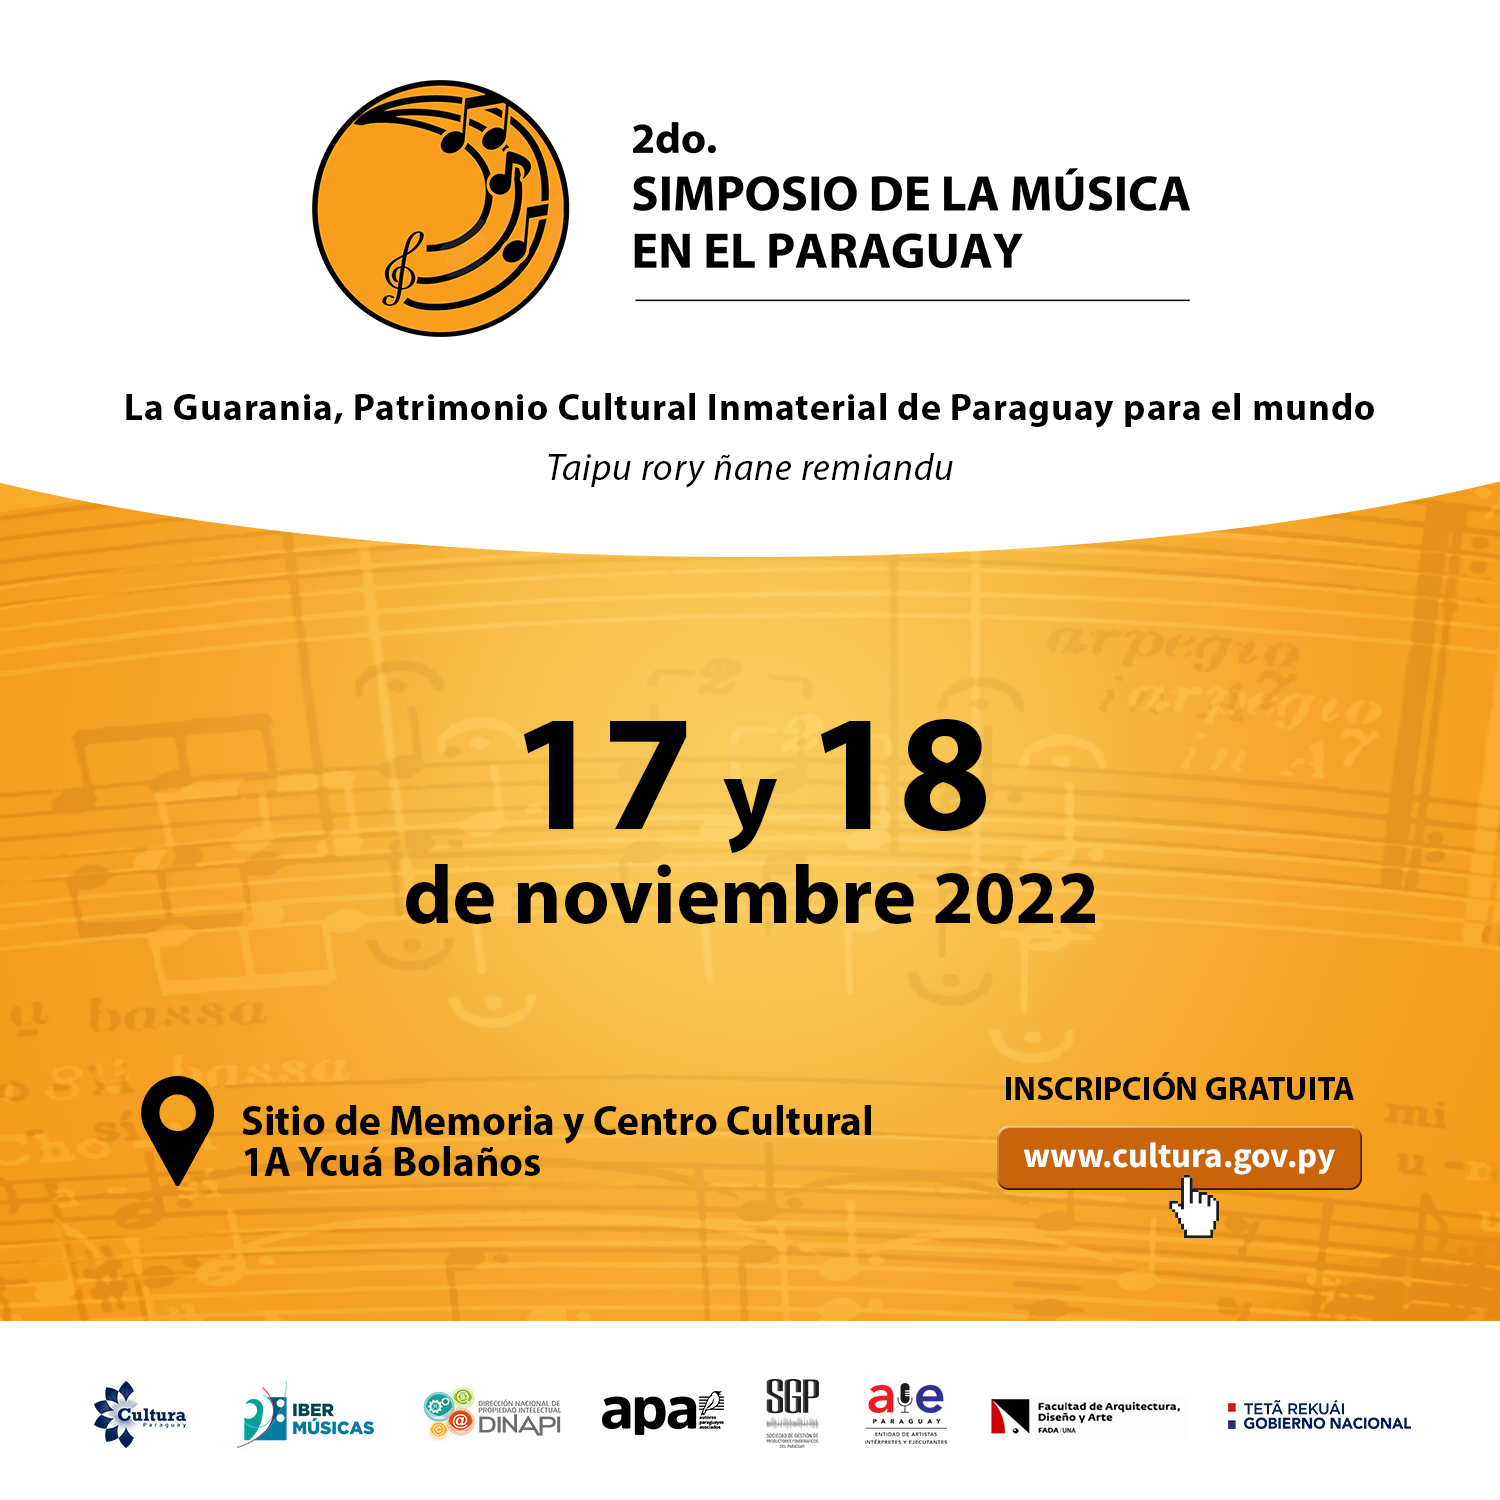 2° Simposio de la Música en el Paraguay acompaña la postulación de la Guarania como Patrimonio Cultural Inmaterial de la Humanidad imagen